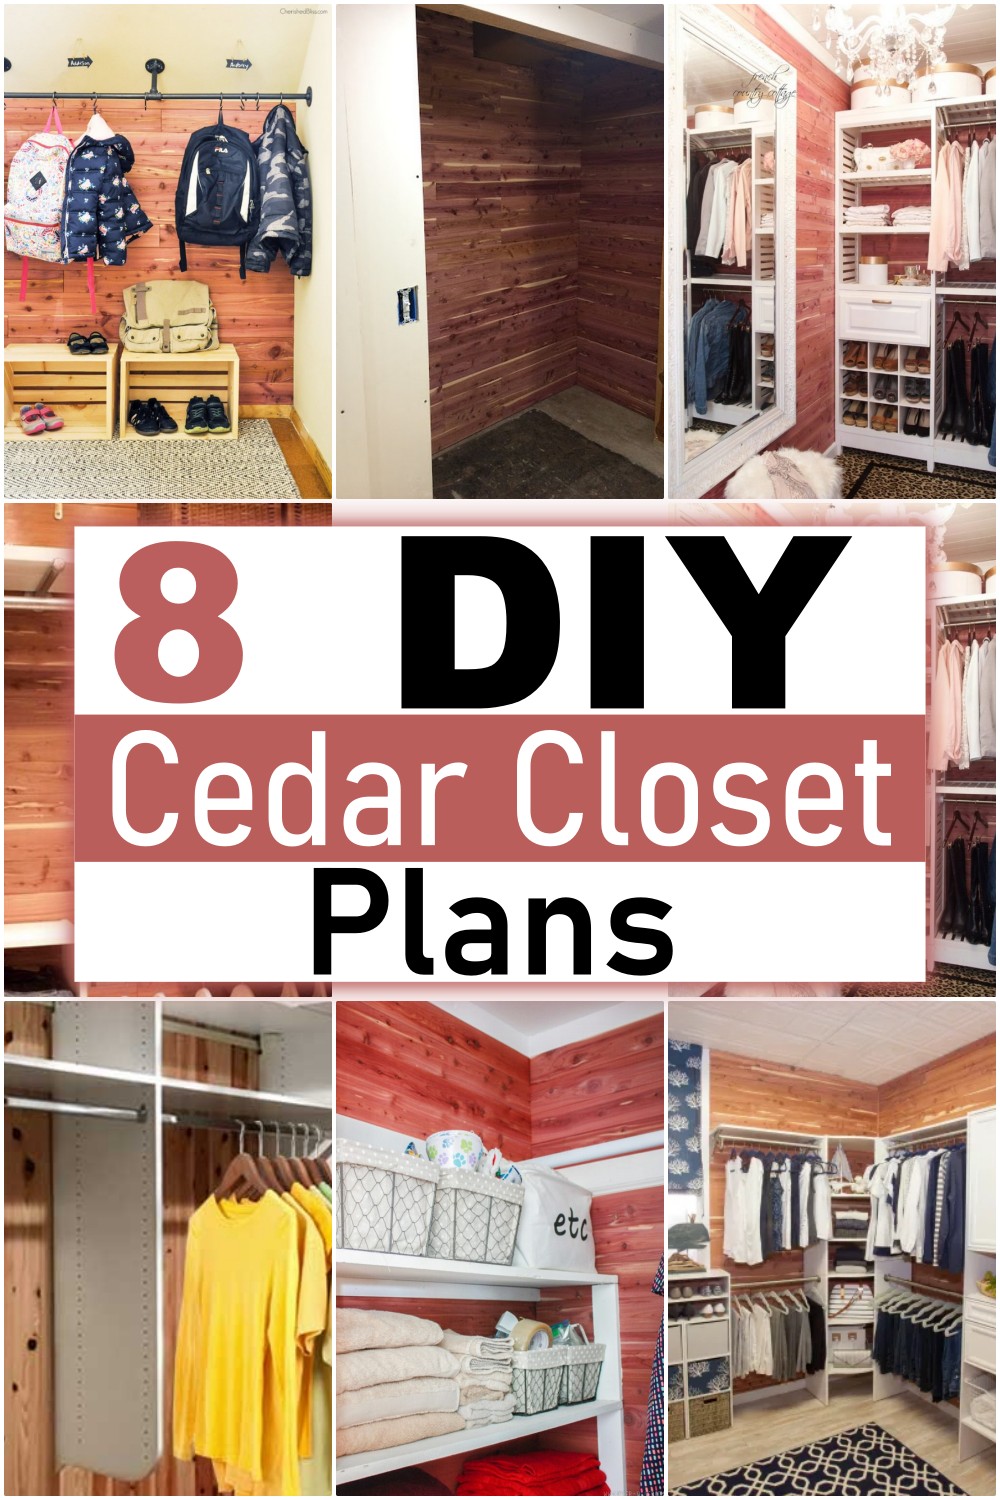 DIY Cedar Closet Plans